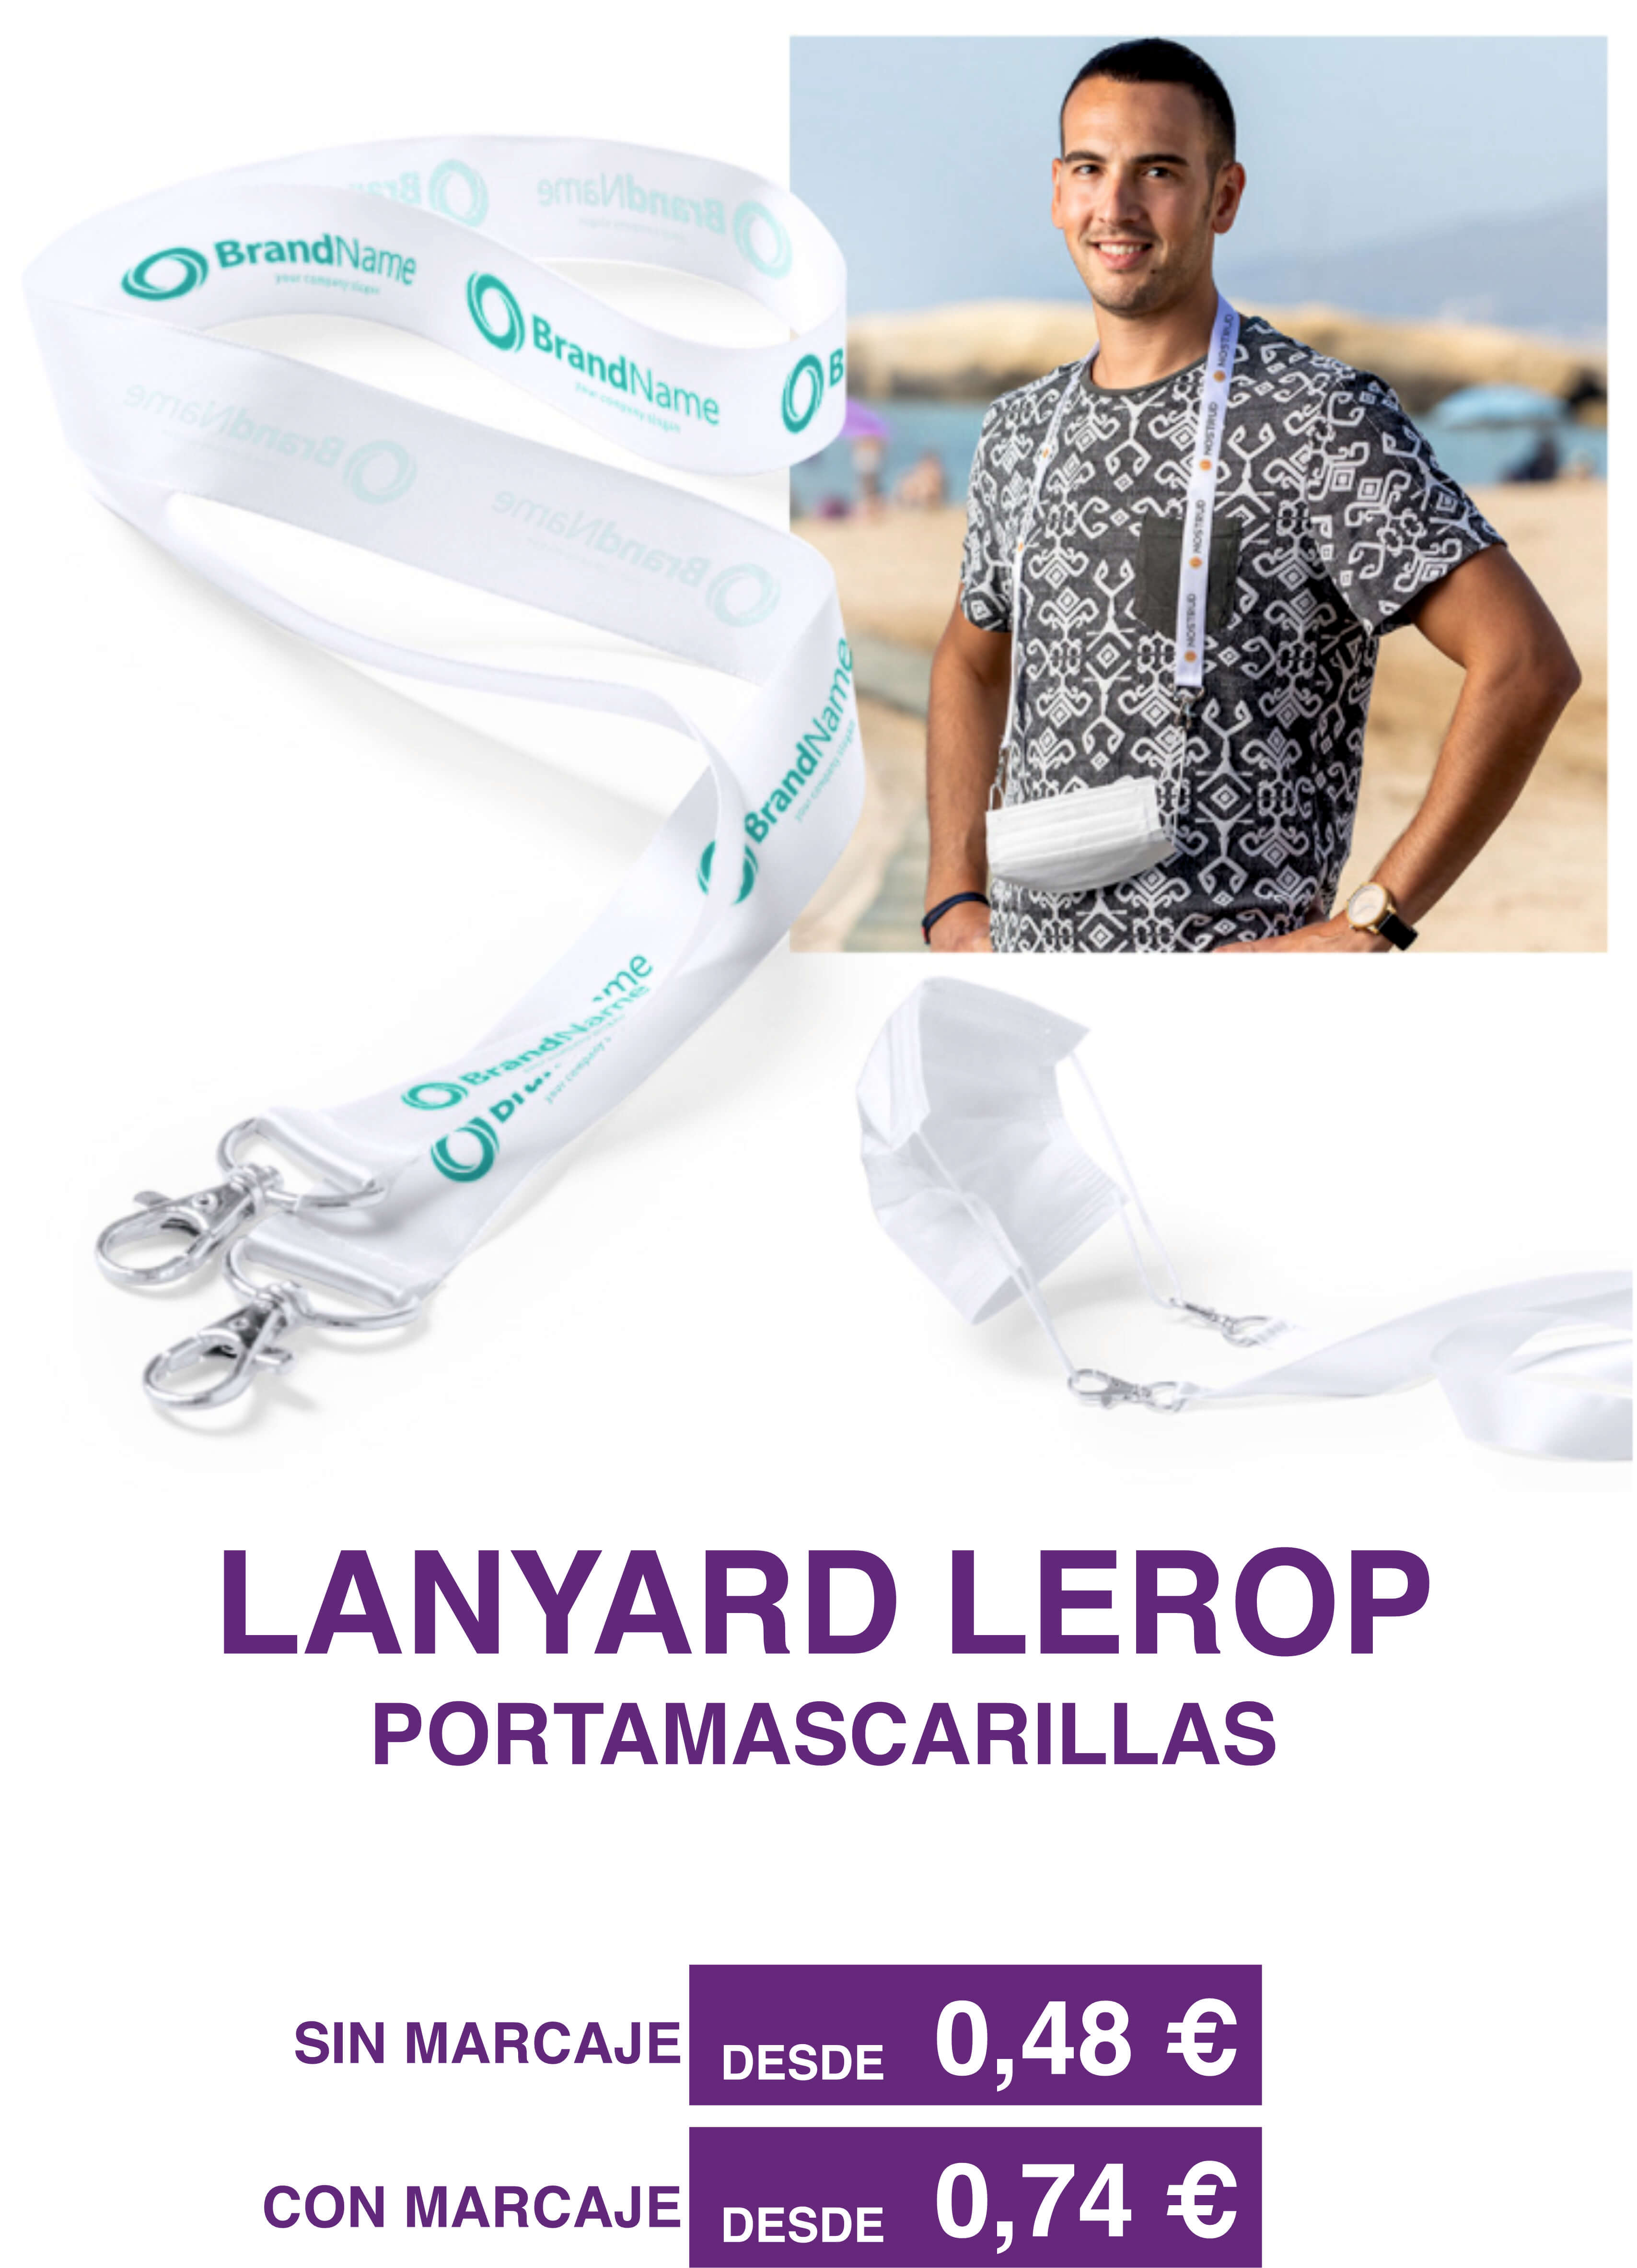 LANYARD LEROP